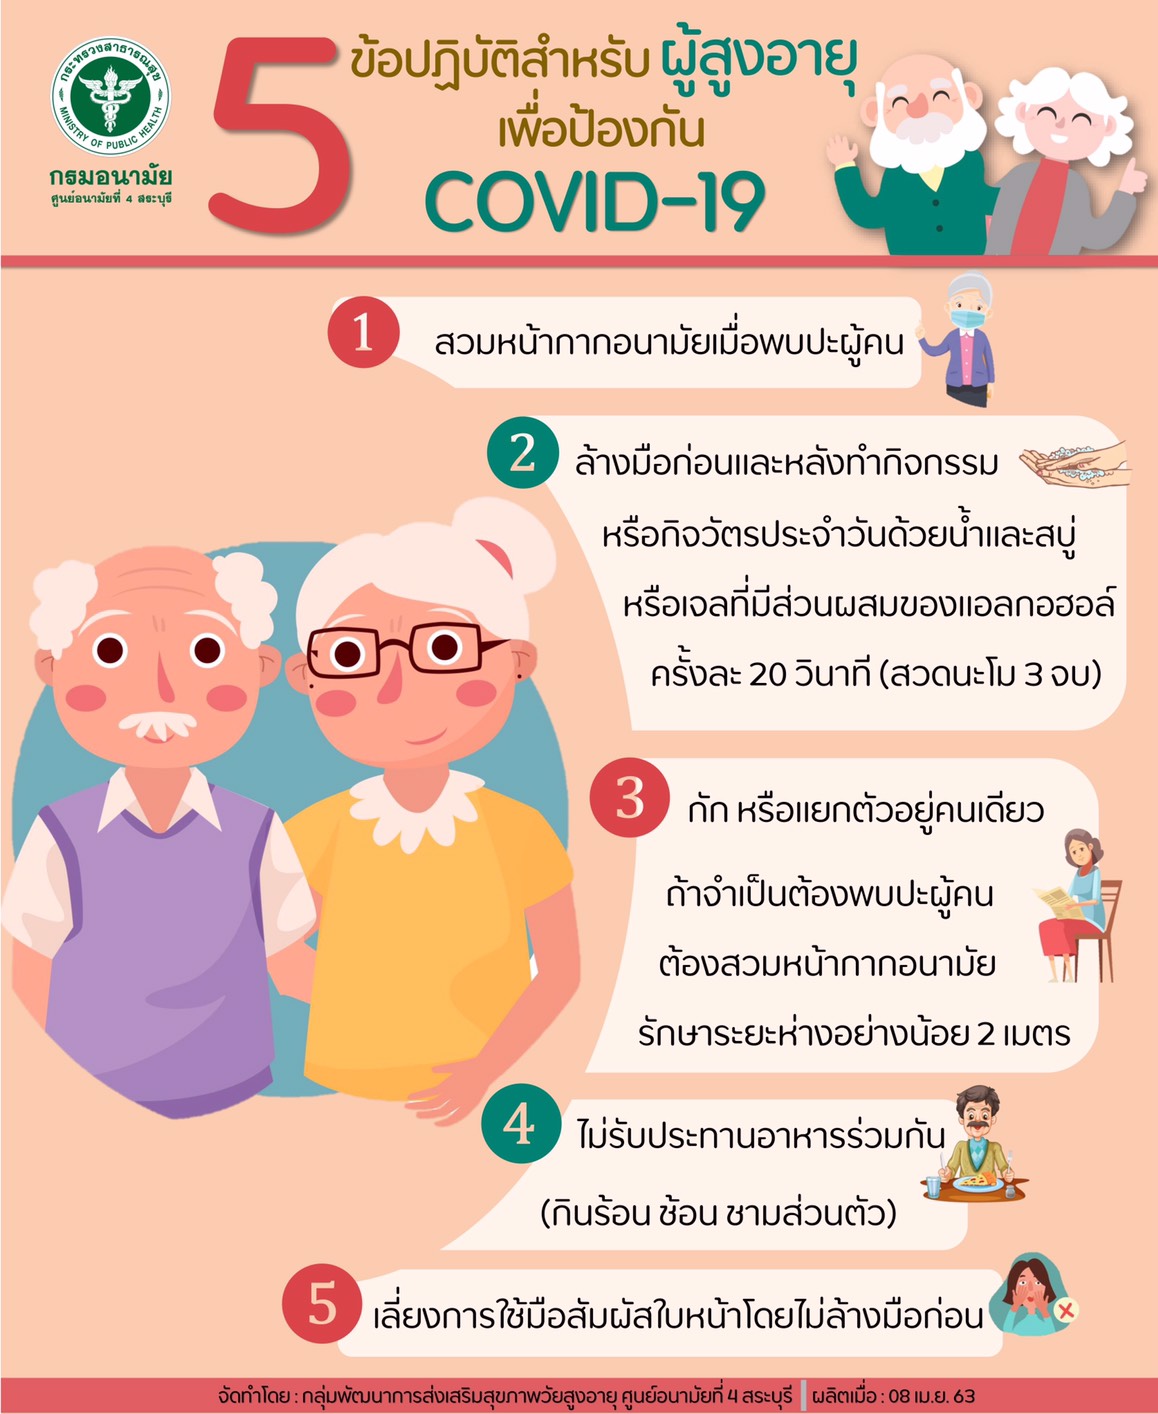 ข้อปฏิบัติสำหรับผู้สูงอายุเพื่อป้องกัน COVID-19